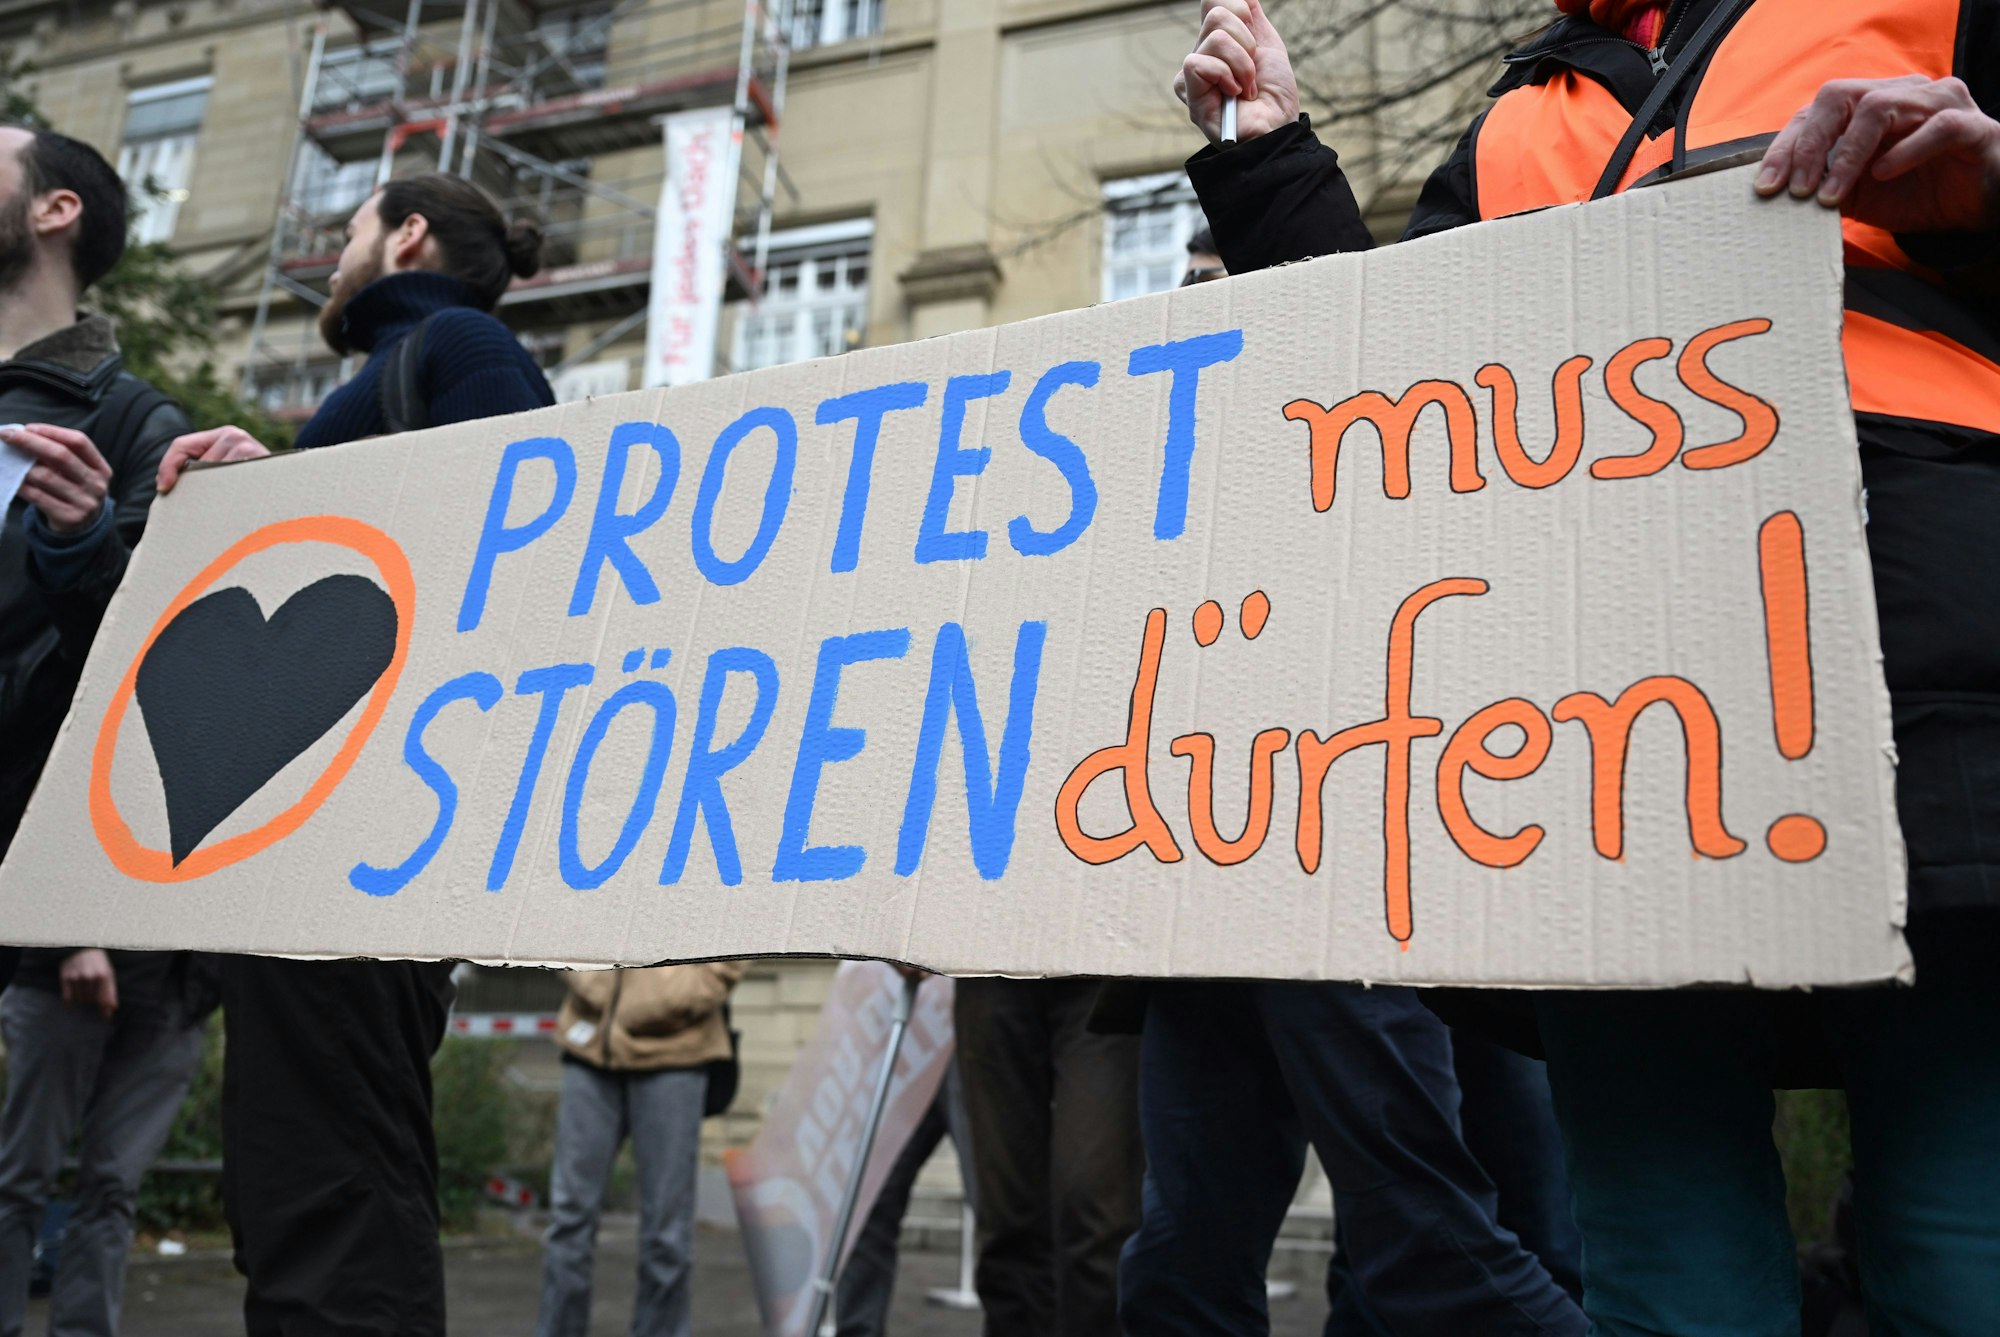 Vor dem Oberlandesgericht (OLG) Karlsruhe protestieren Klimaaktivisten mit einem Plakat auf dem steht «Protest muss stören dürfen!» gegen den Prozess ob Straßenblockaden von Klimaaktivisten als Nötigung einzustufen sind.